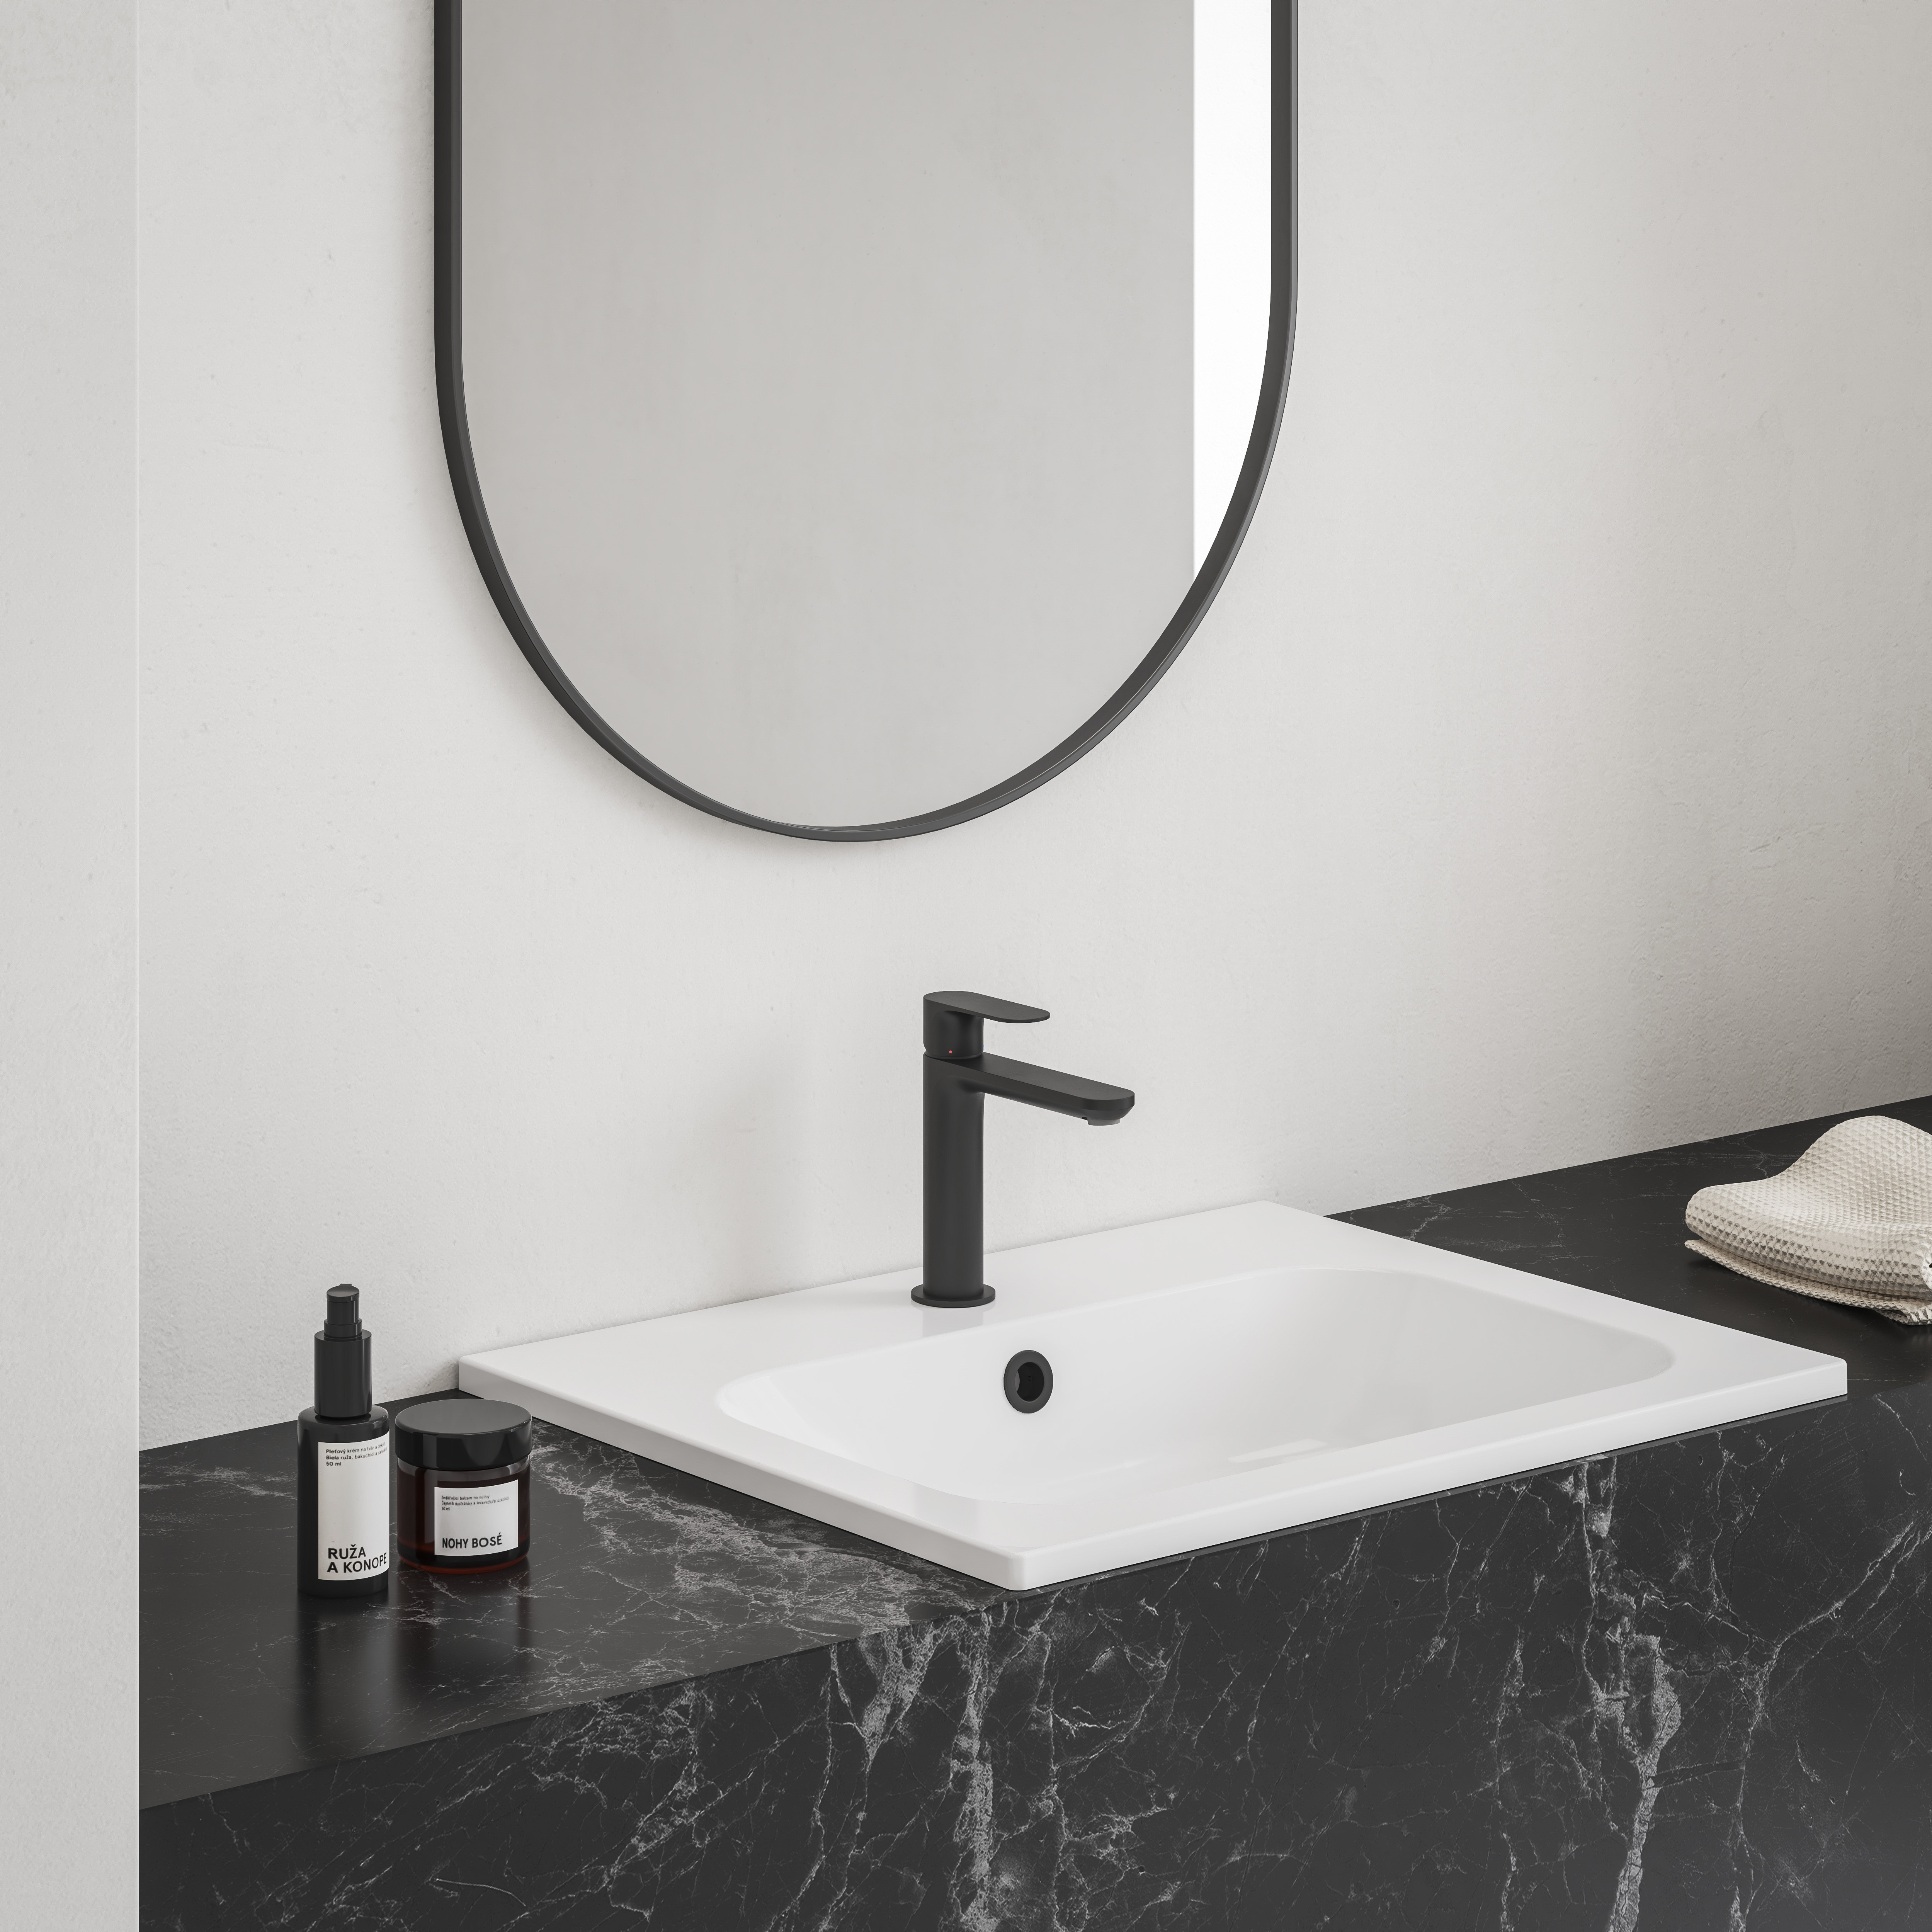 A fürdőszobában lévő fekete szín megtöri a minimalista stílust. 